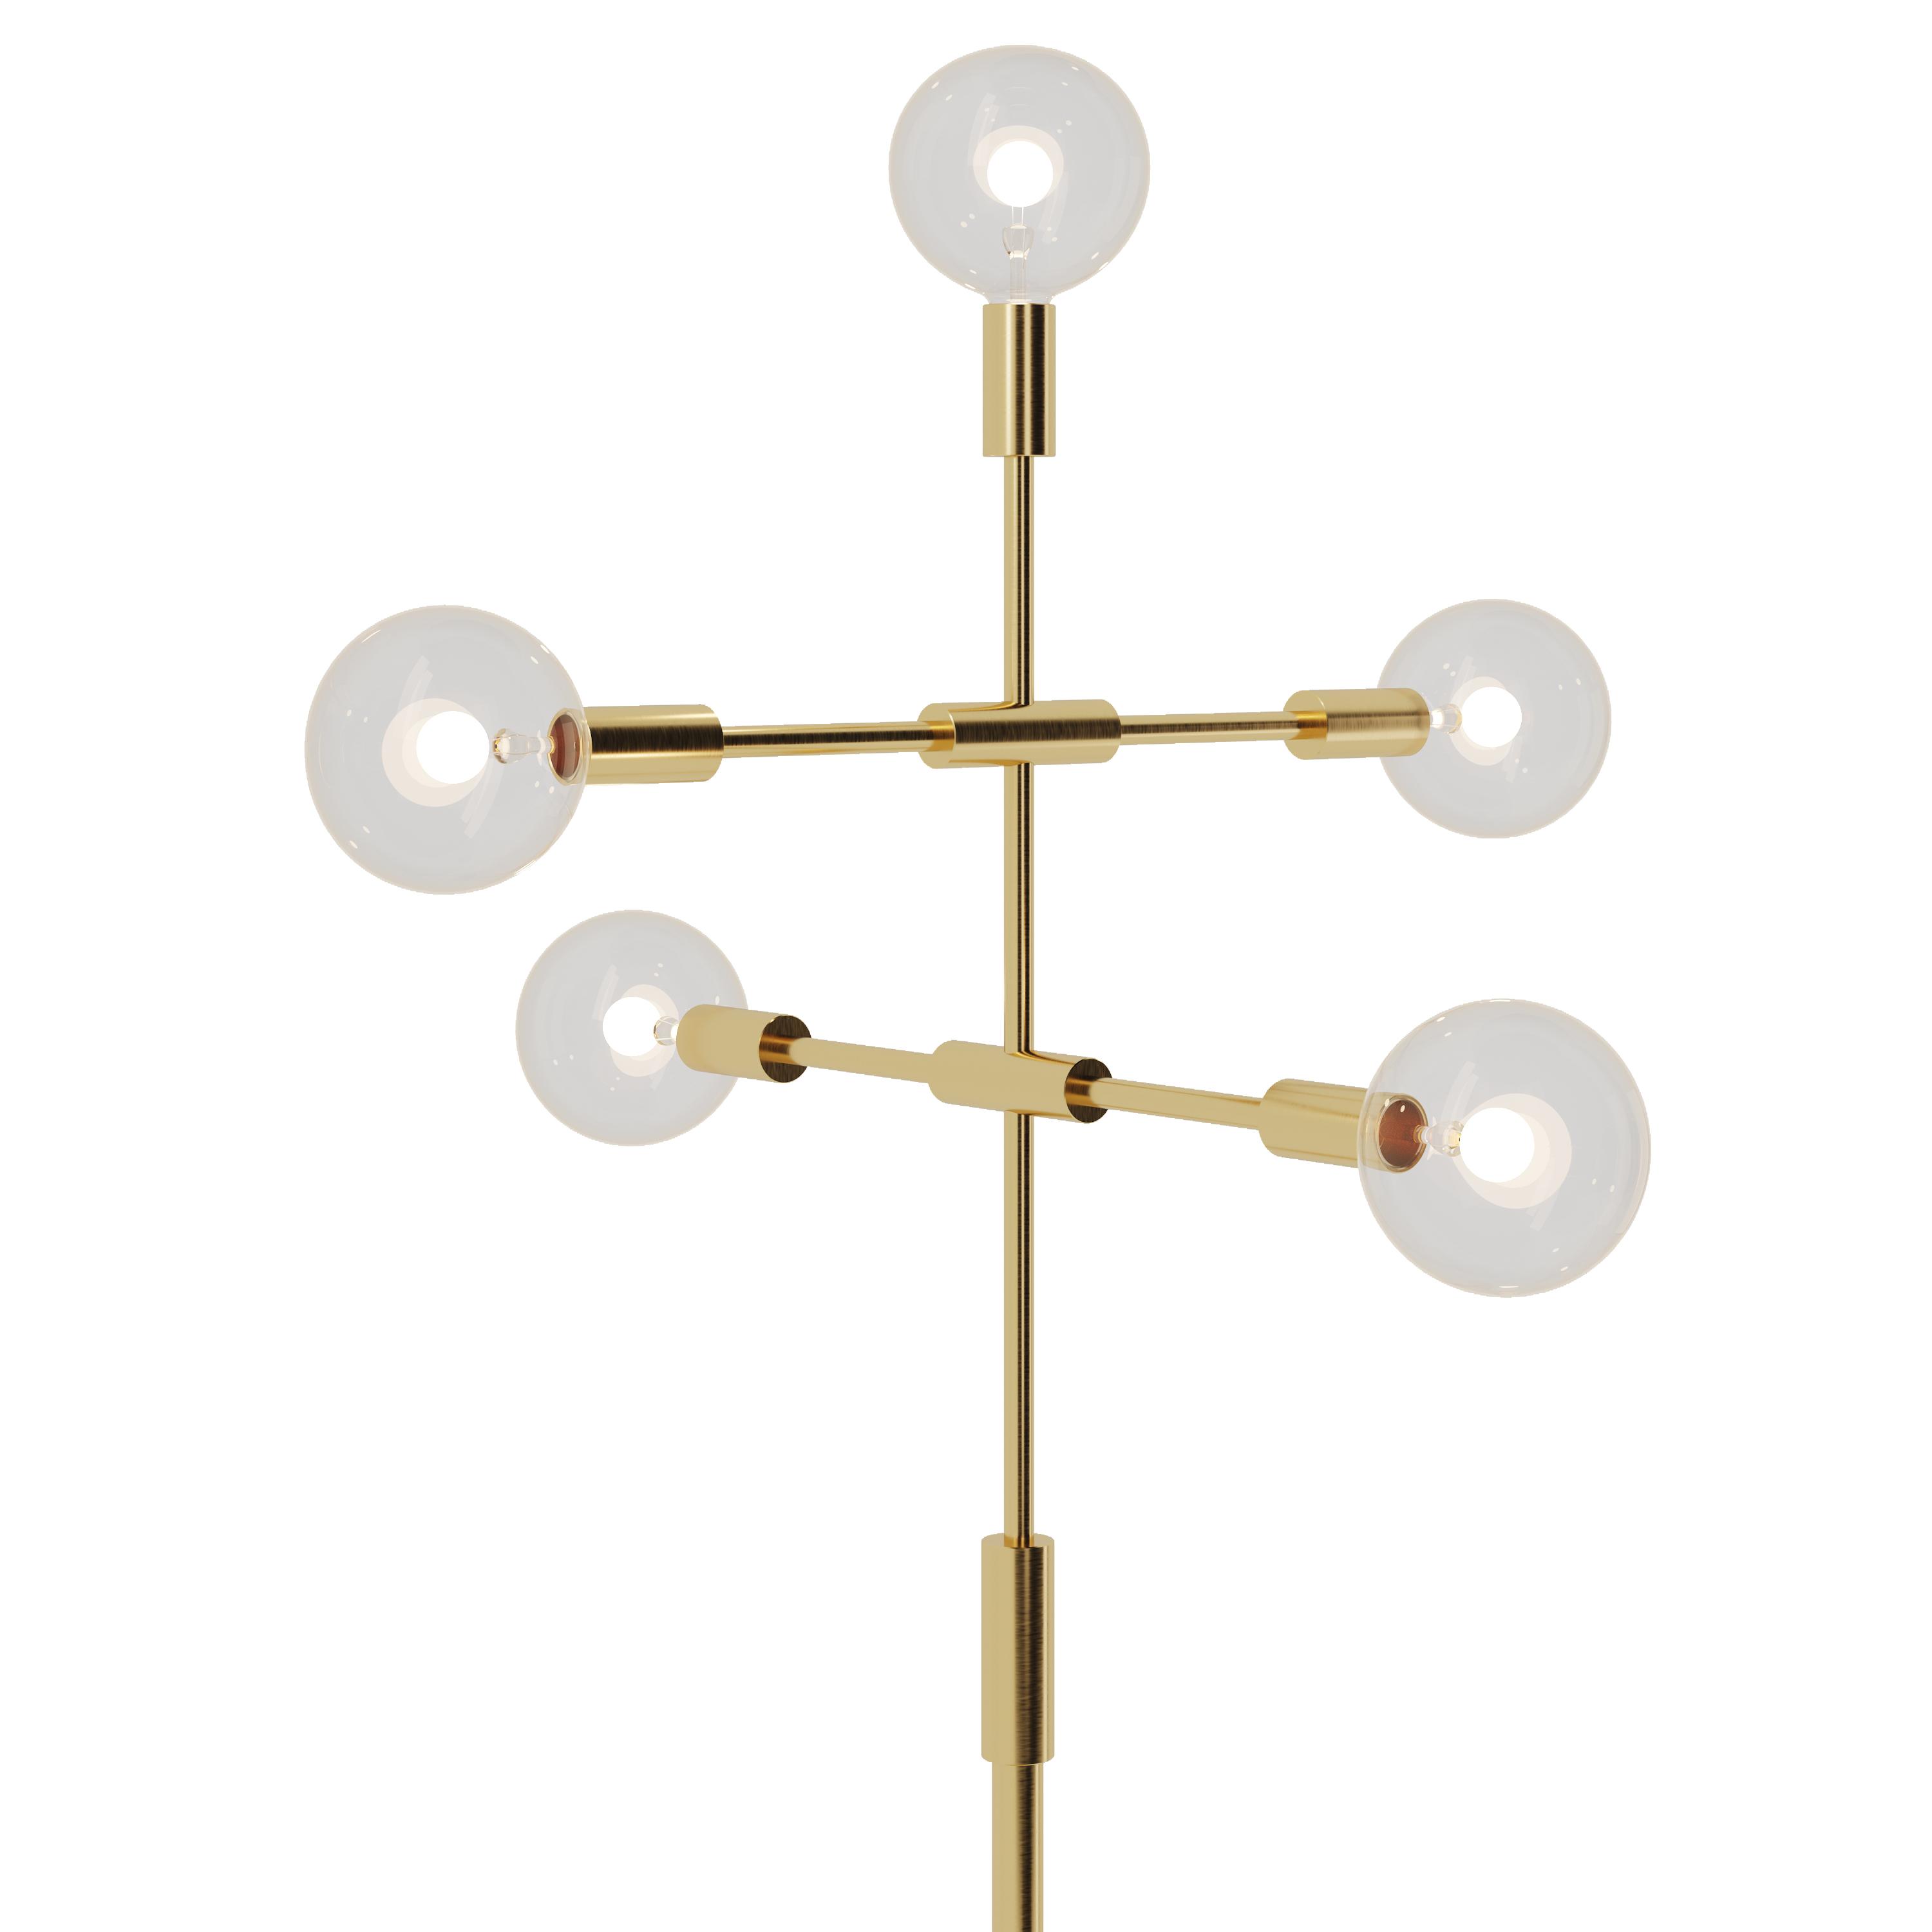 Mals floor lamp, SKU. 5089 by Pikartlights 3d model